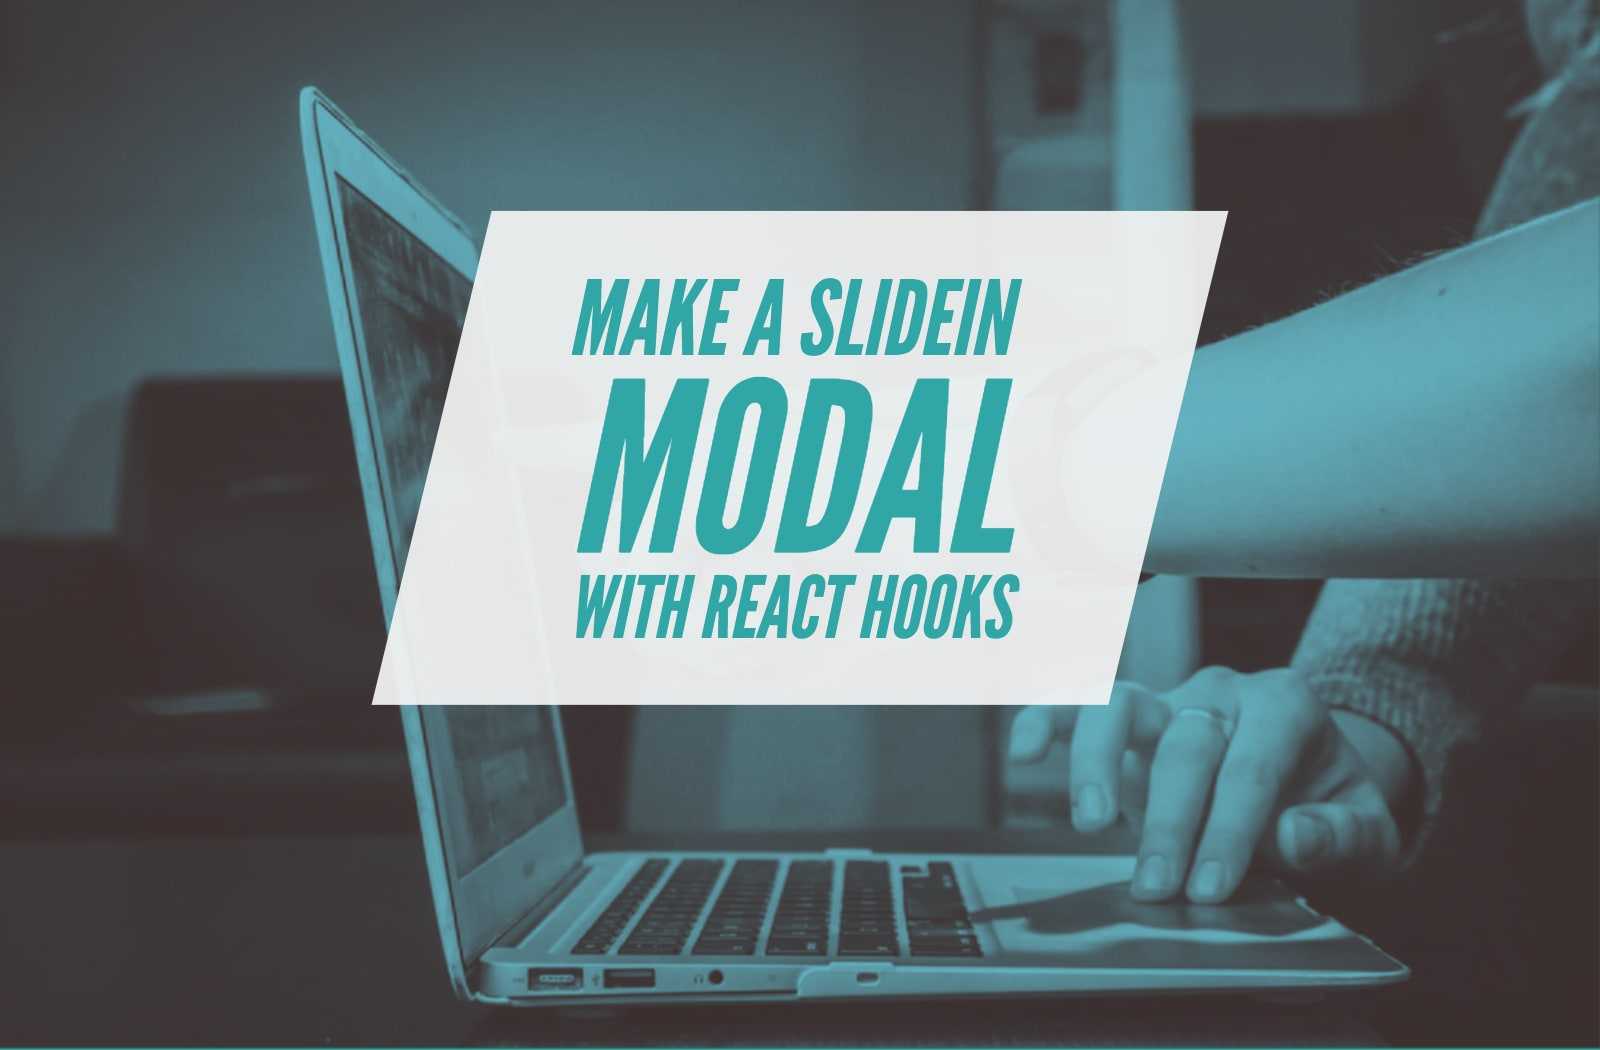 React Hooks Slide In Modal cover image